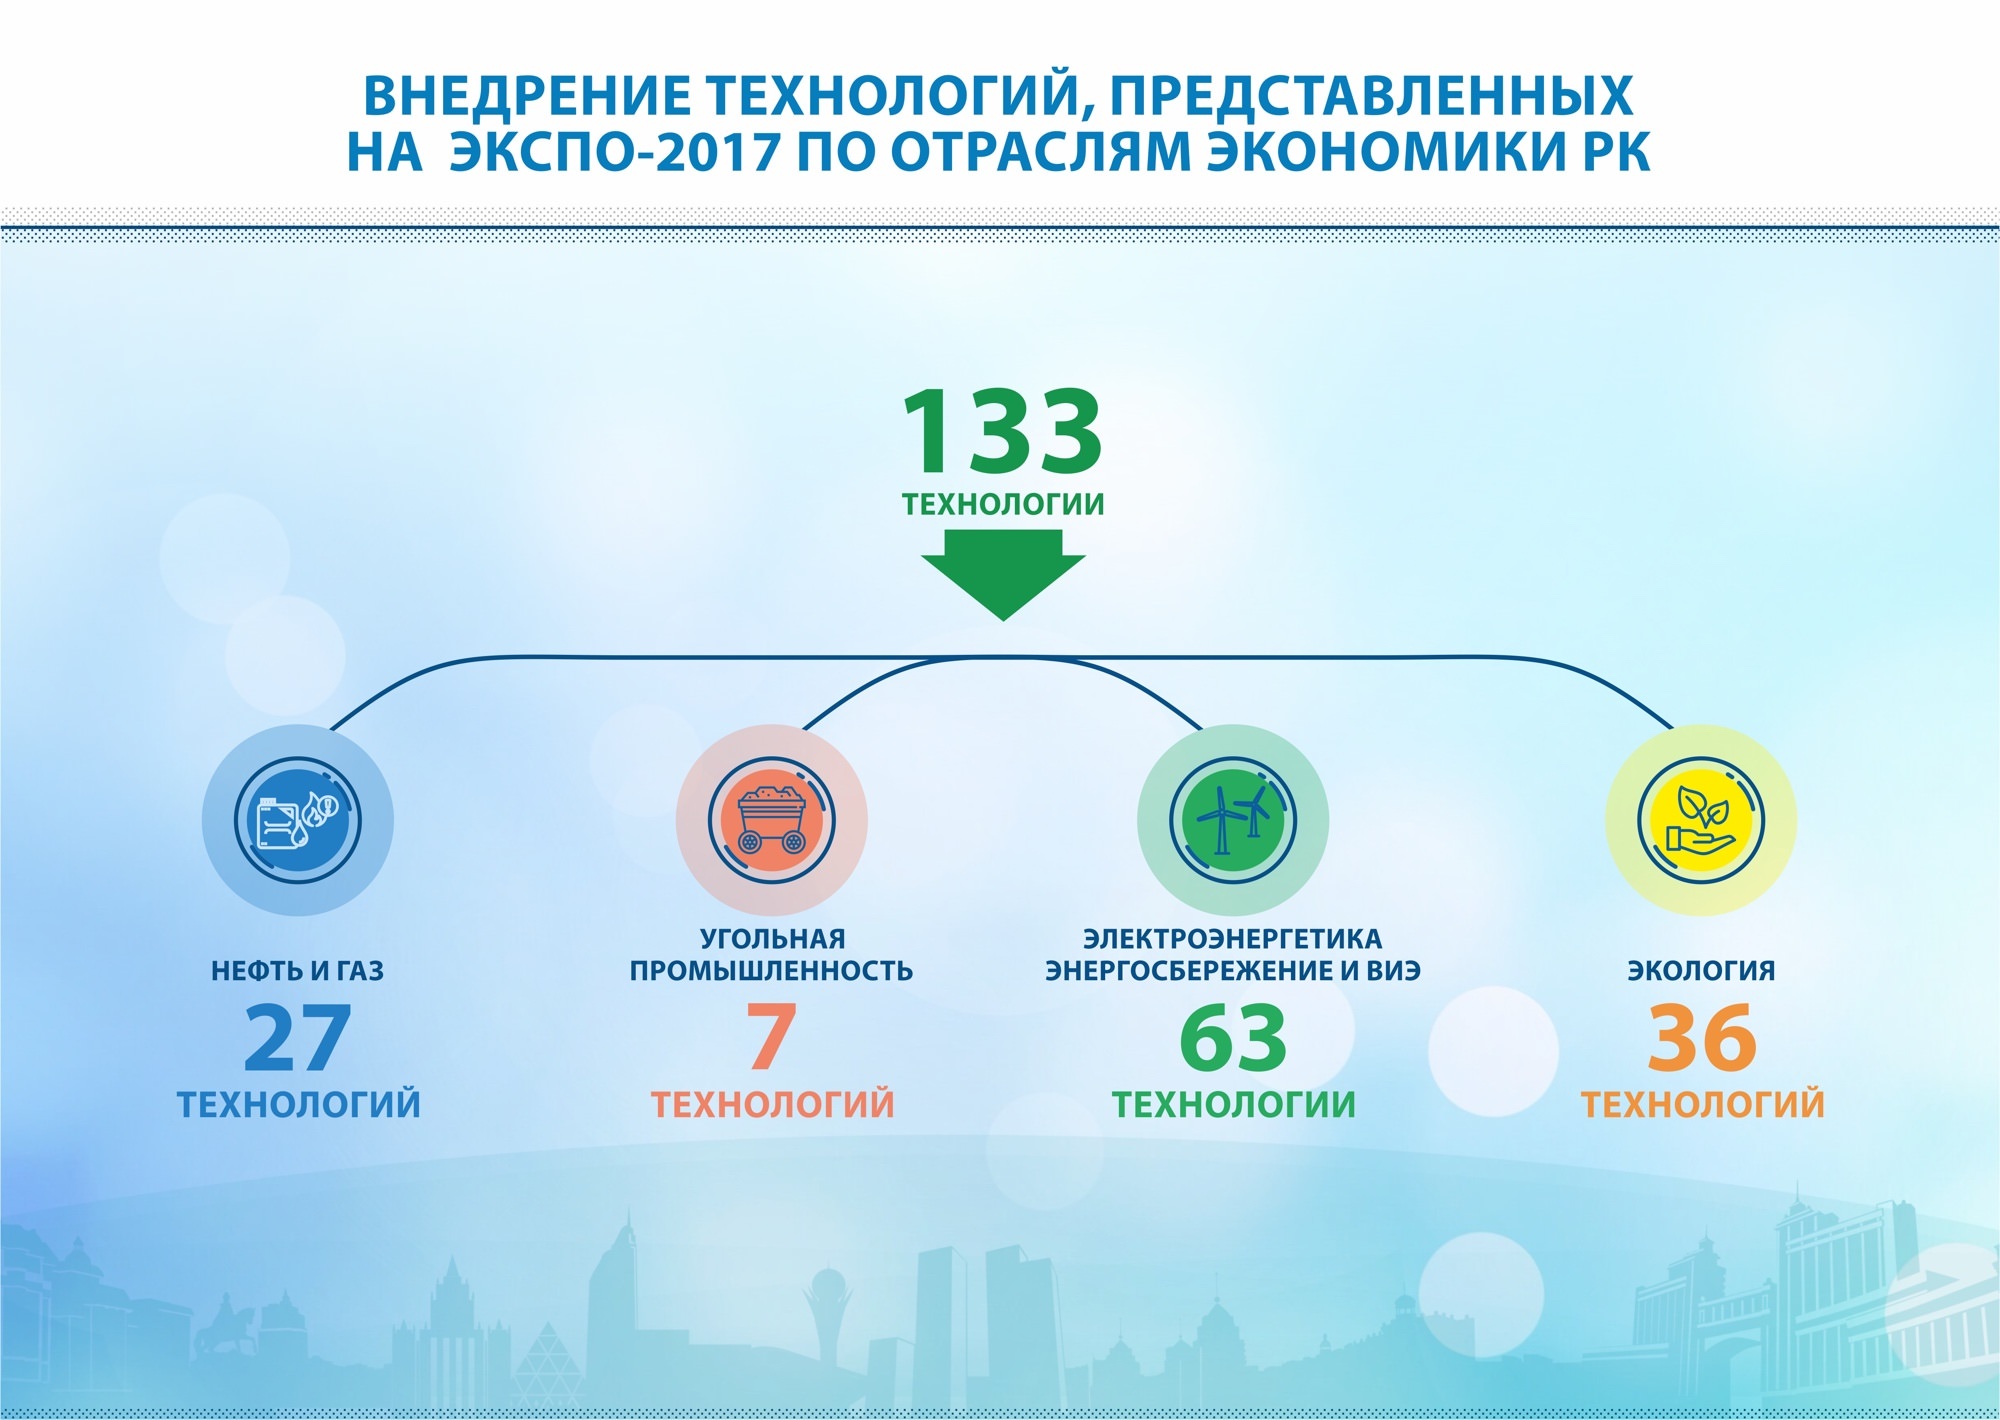 В Казахстане будут внедрены 133 технологии «Экспо-2017»